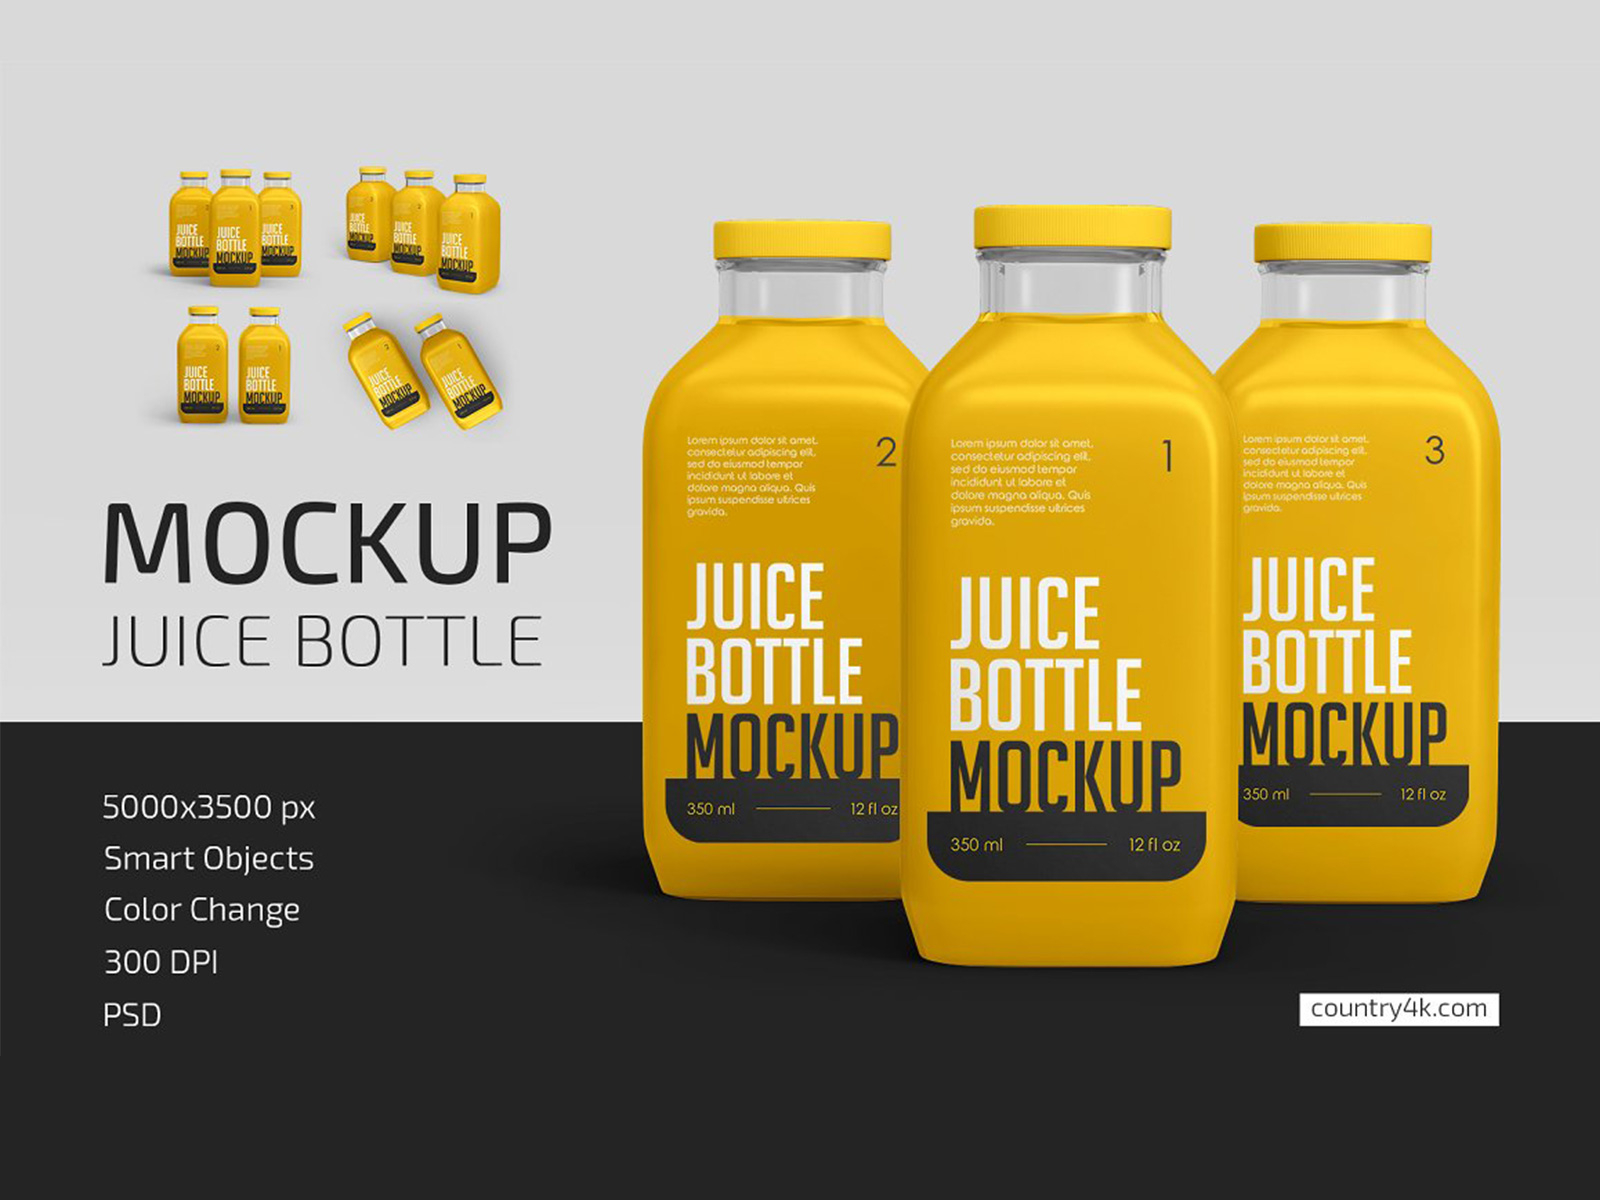 Free 350ml Juice Bottle Mockup (PSD)